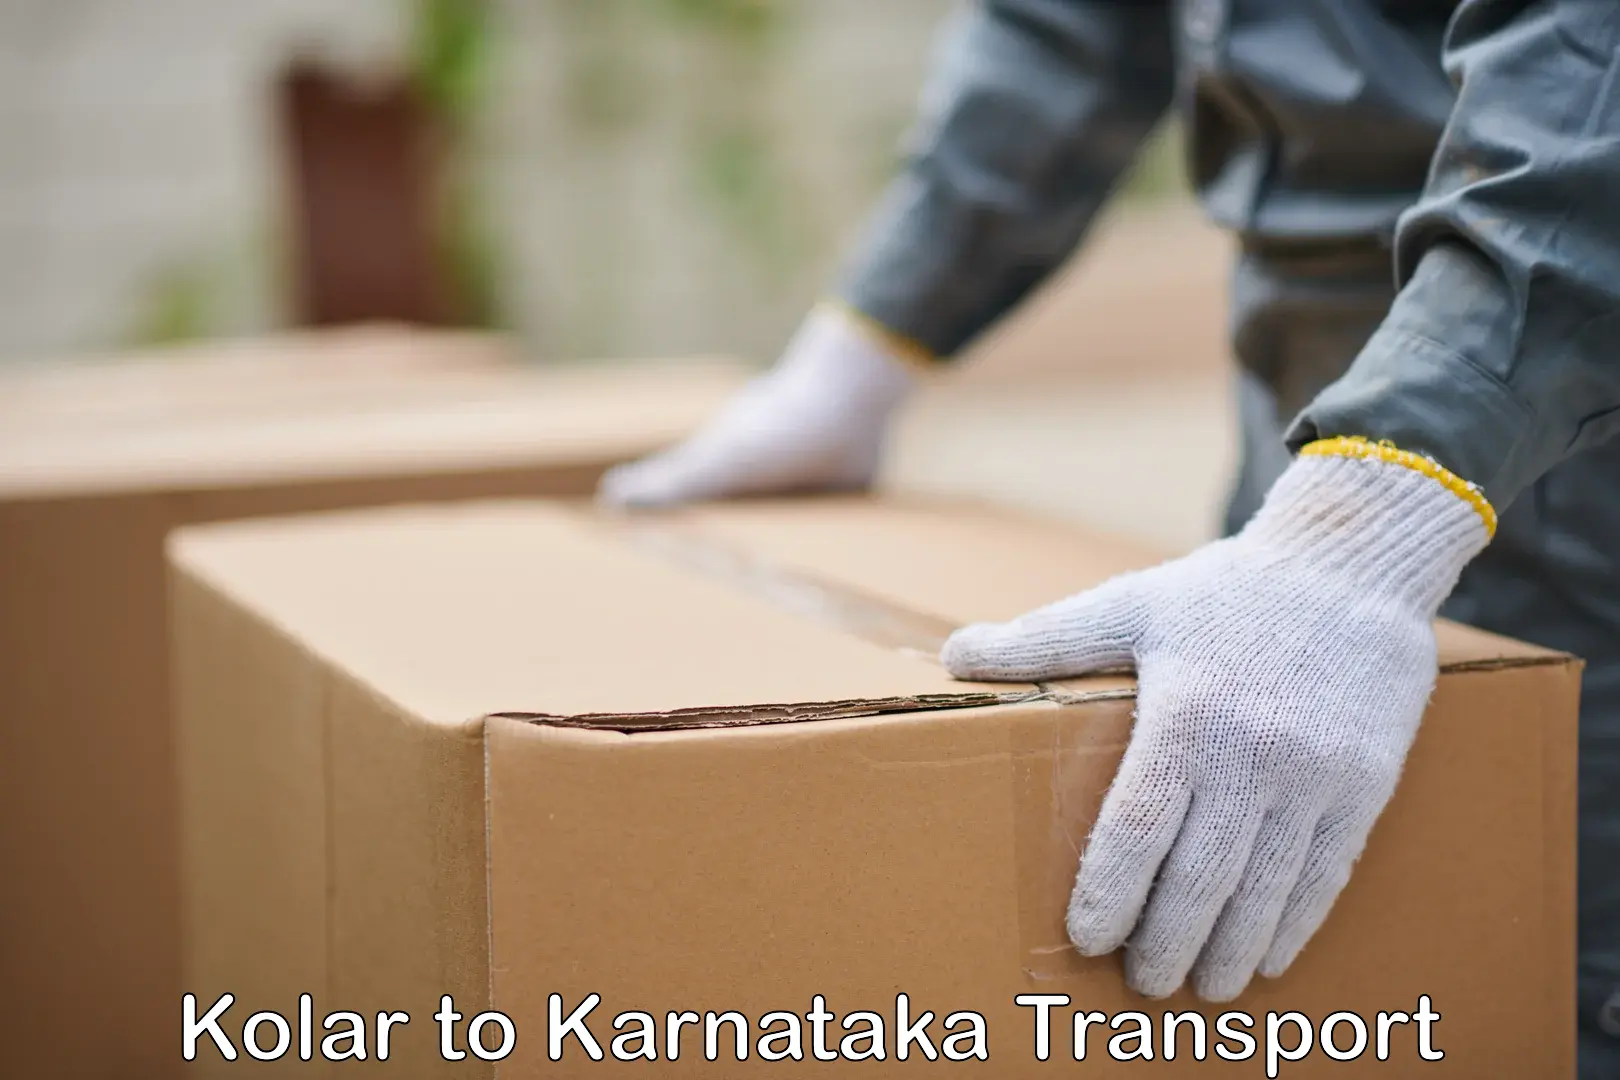 Intercity transport Kolar to Karnataka